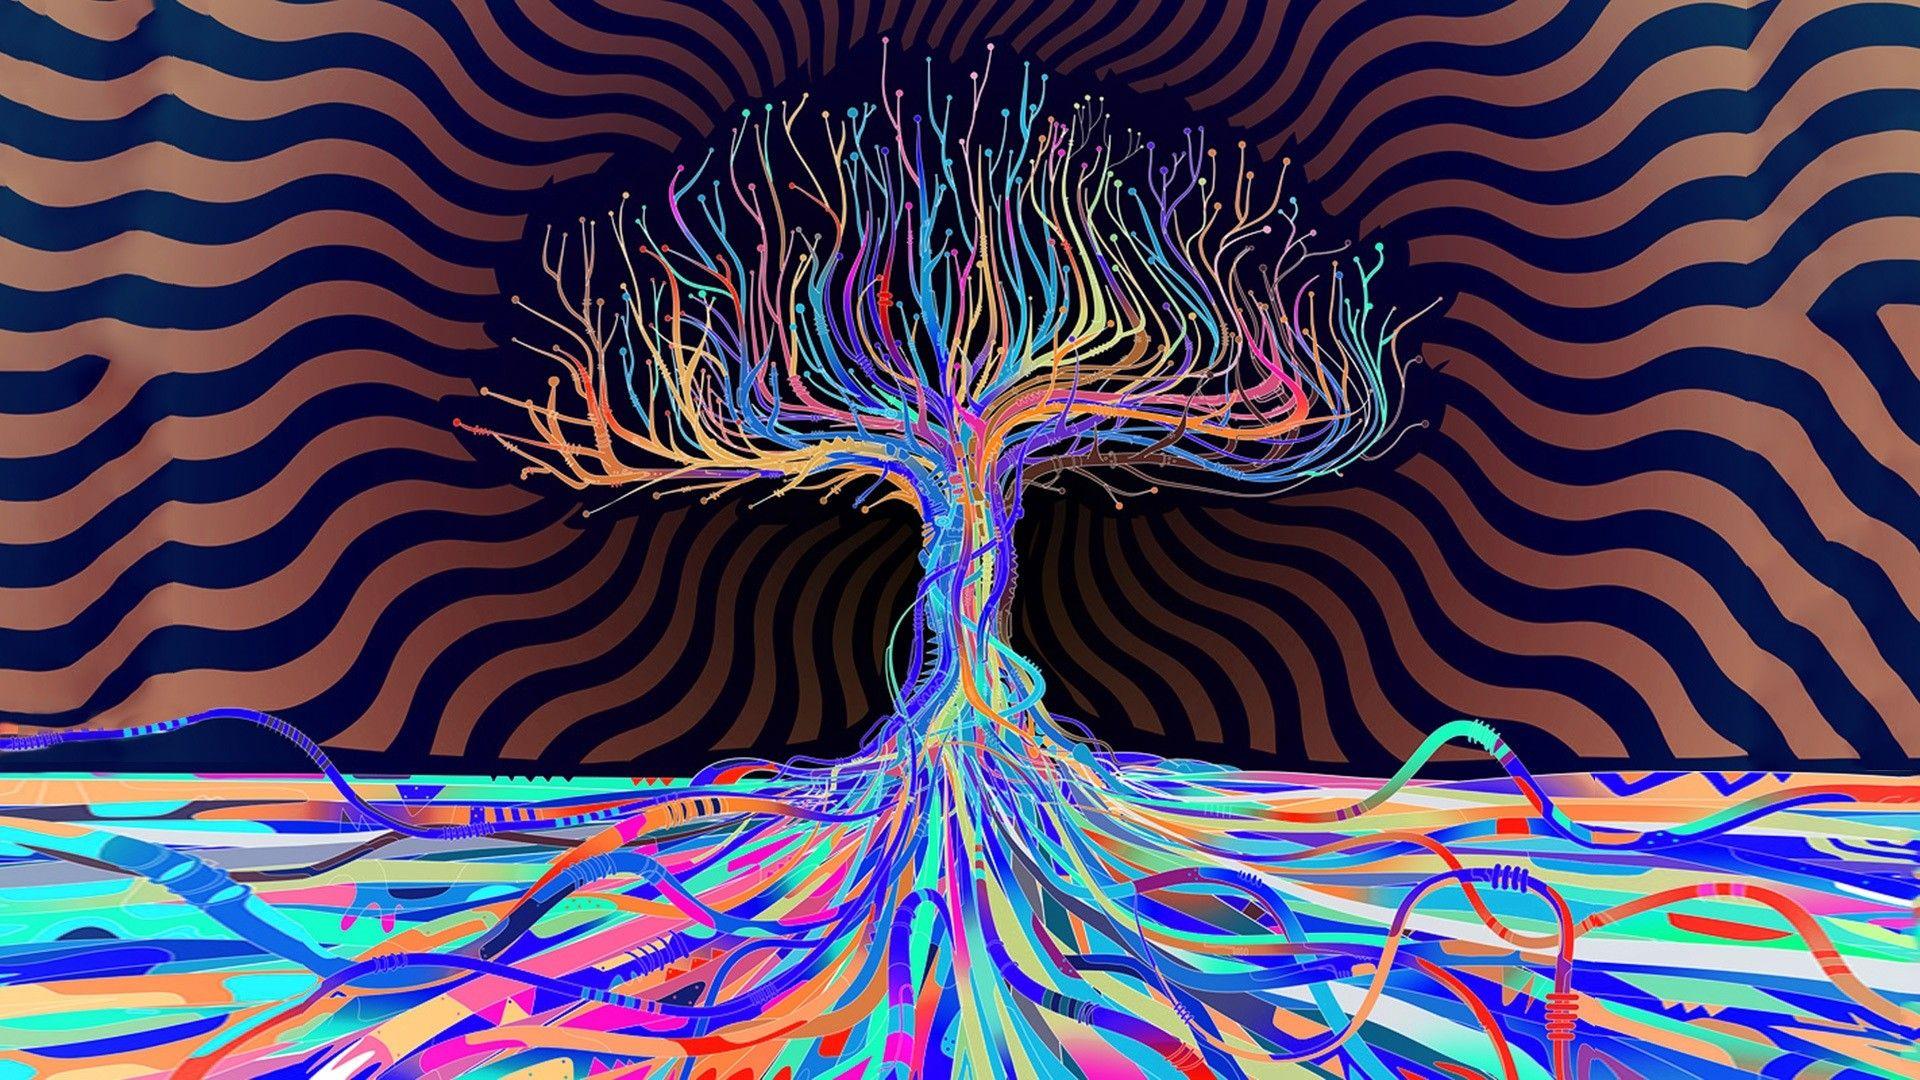 LSD Phone Wallpaper Free LSD Phone Background